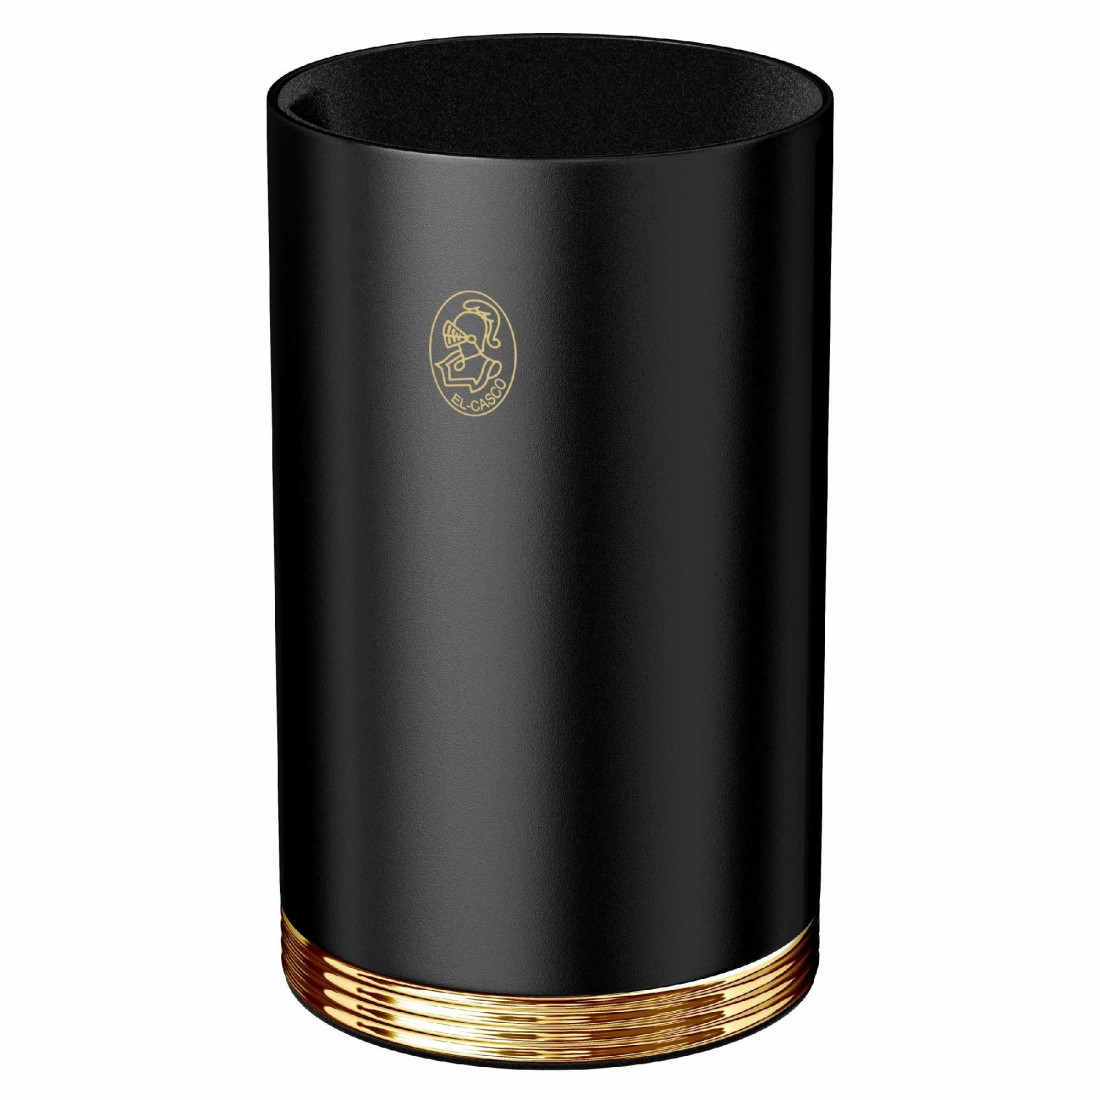 El Casco Black-Gold Pencil Pot